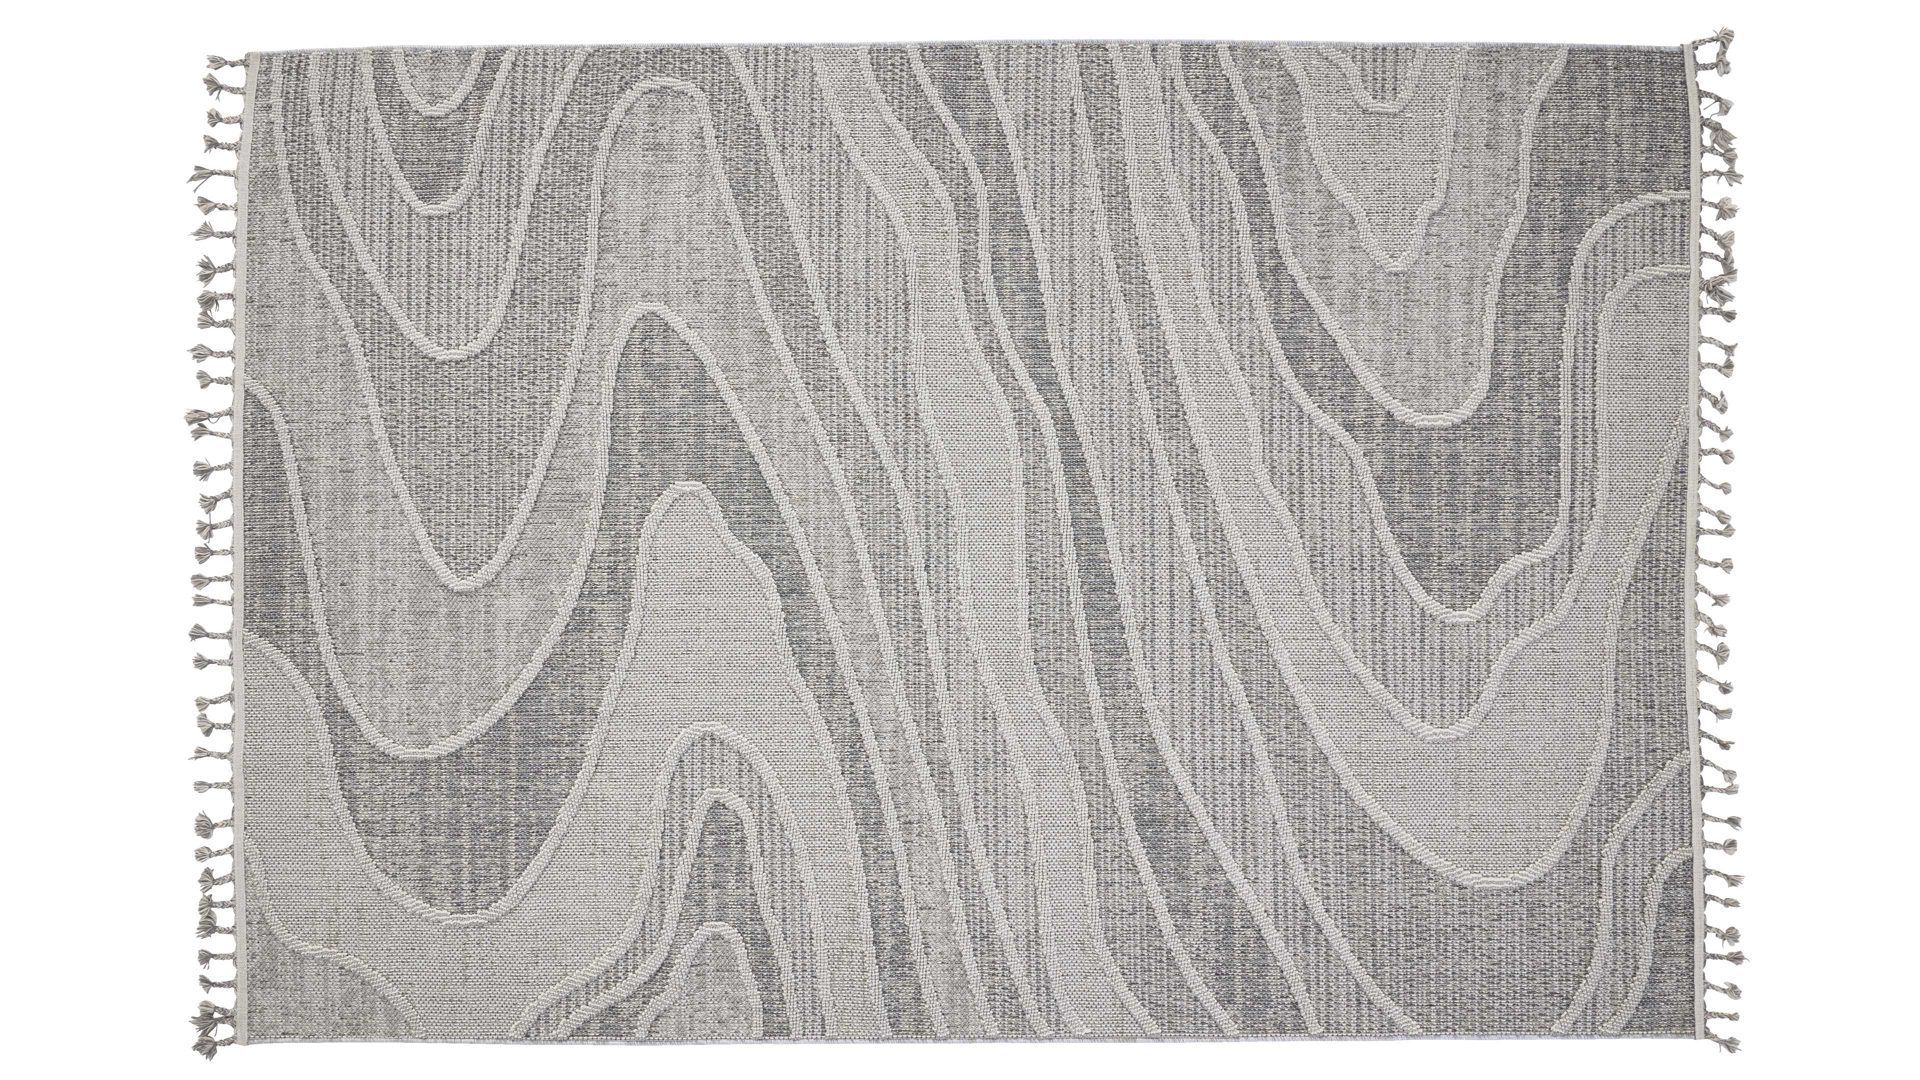 Outdoor-Teppich Interliving aus Kunstfaser in Grau Interliving Teppich Serie G-8020 - Outdoor-Teppich graues Linienmuster - ca. 67 x 130 cm